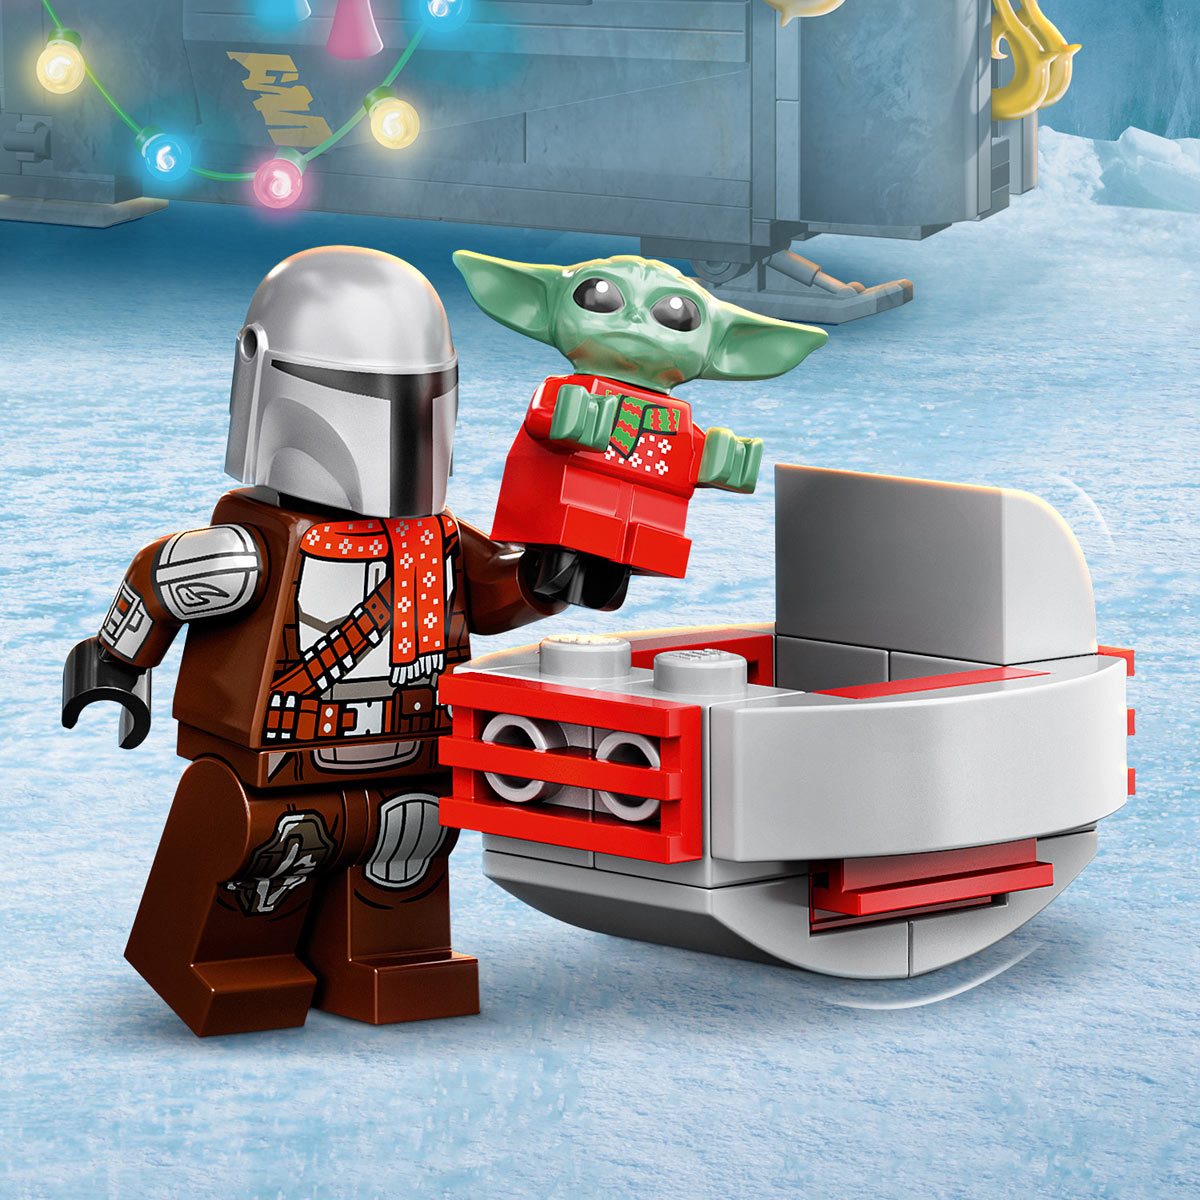 Lego Baby Yoda & Mandalorian 75307 Grogu Christmas Gift Minifigures Lot of  2 